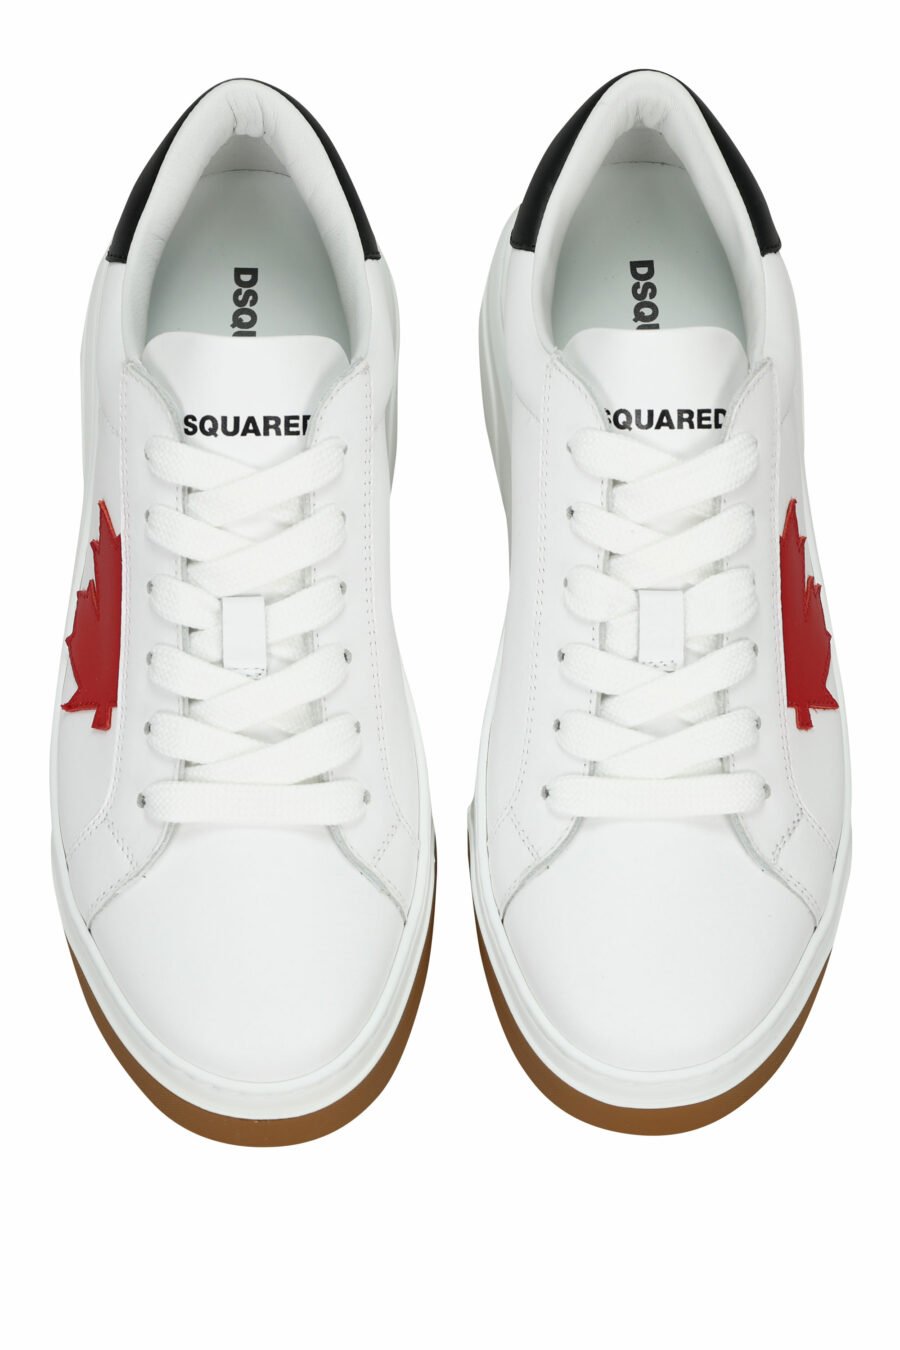 Zapatillas blancas con minilogo rojo y suela bicolor - 8055777319338 5